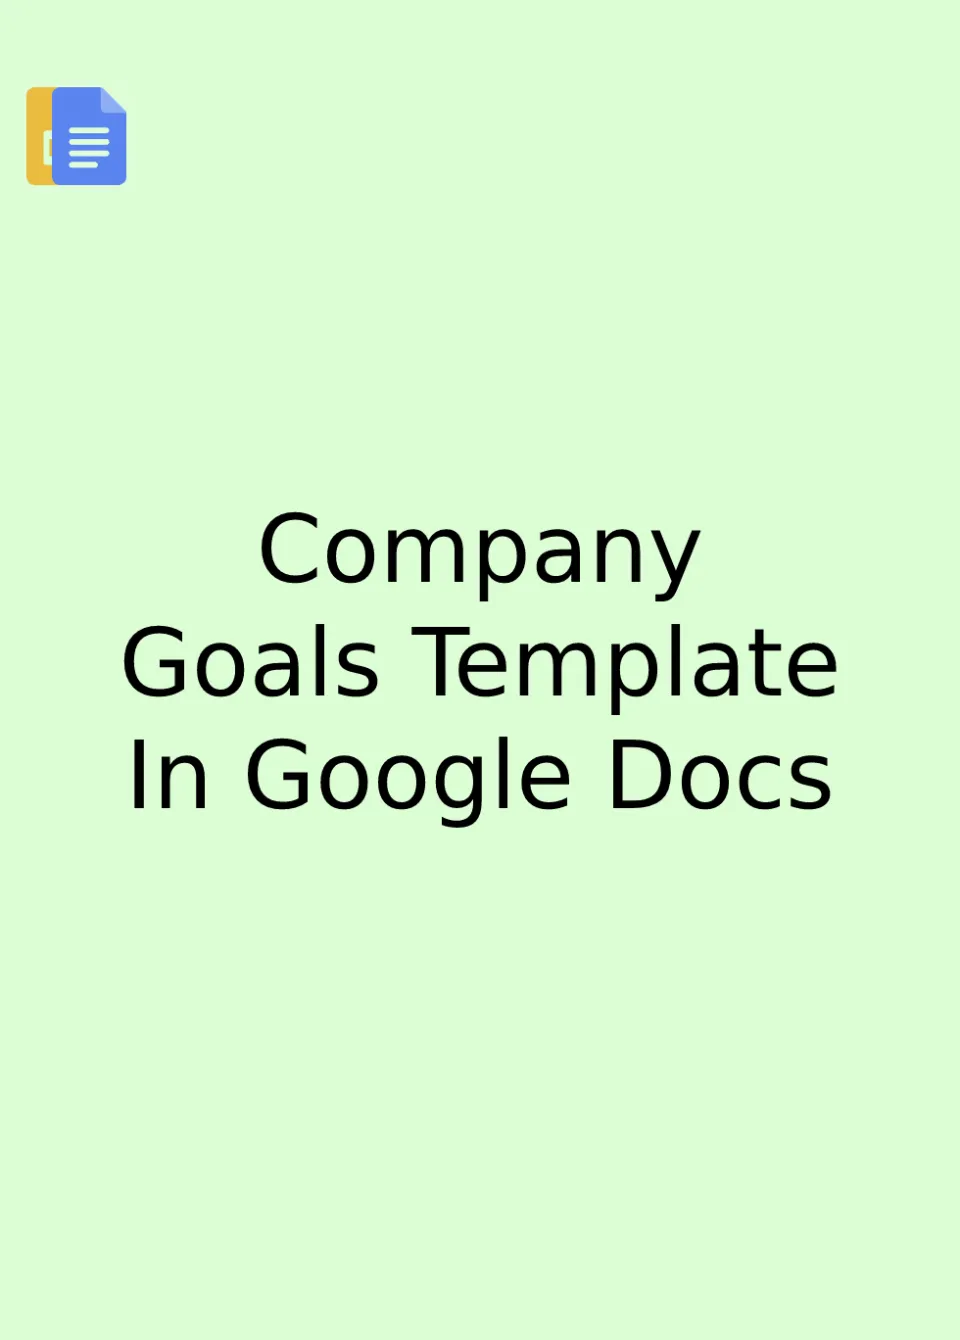 Company Goals Template Google Docs